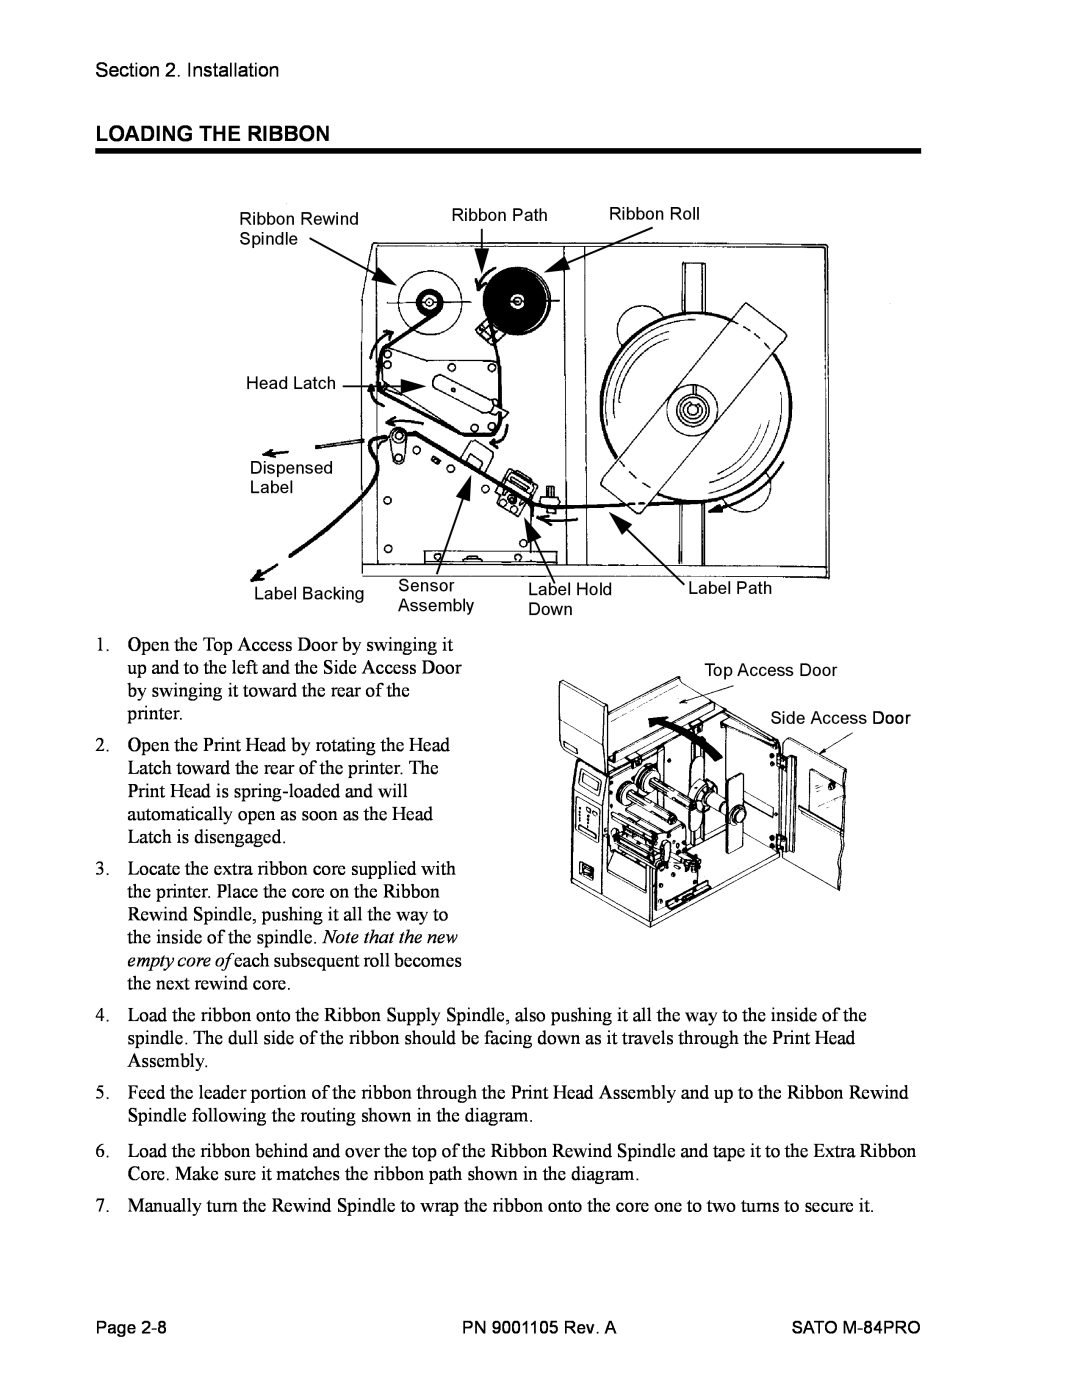 SATO M-84PRO manual Loading The Ribbon 